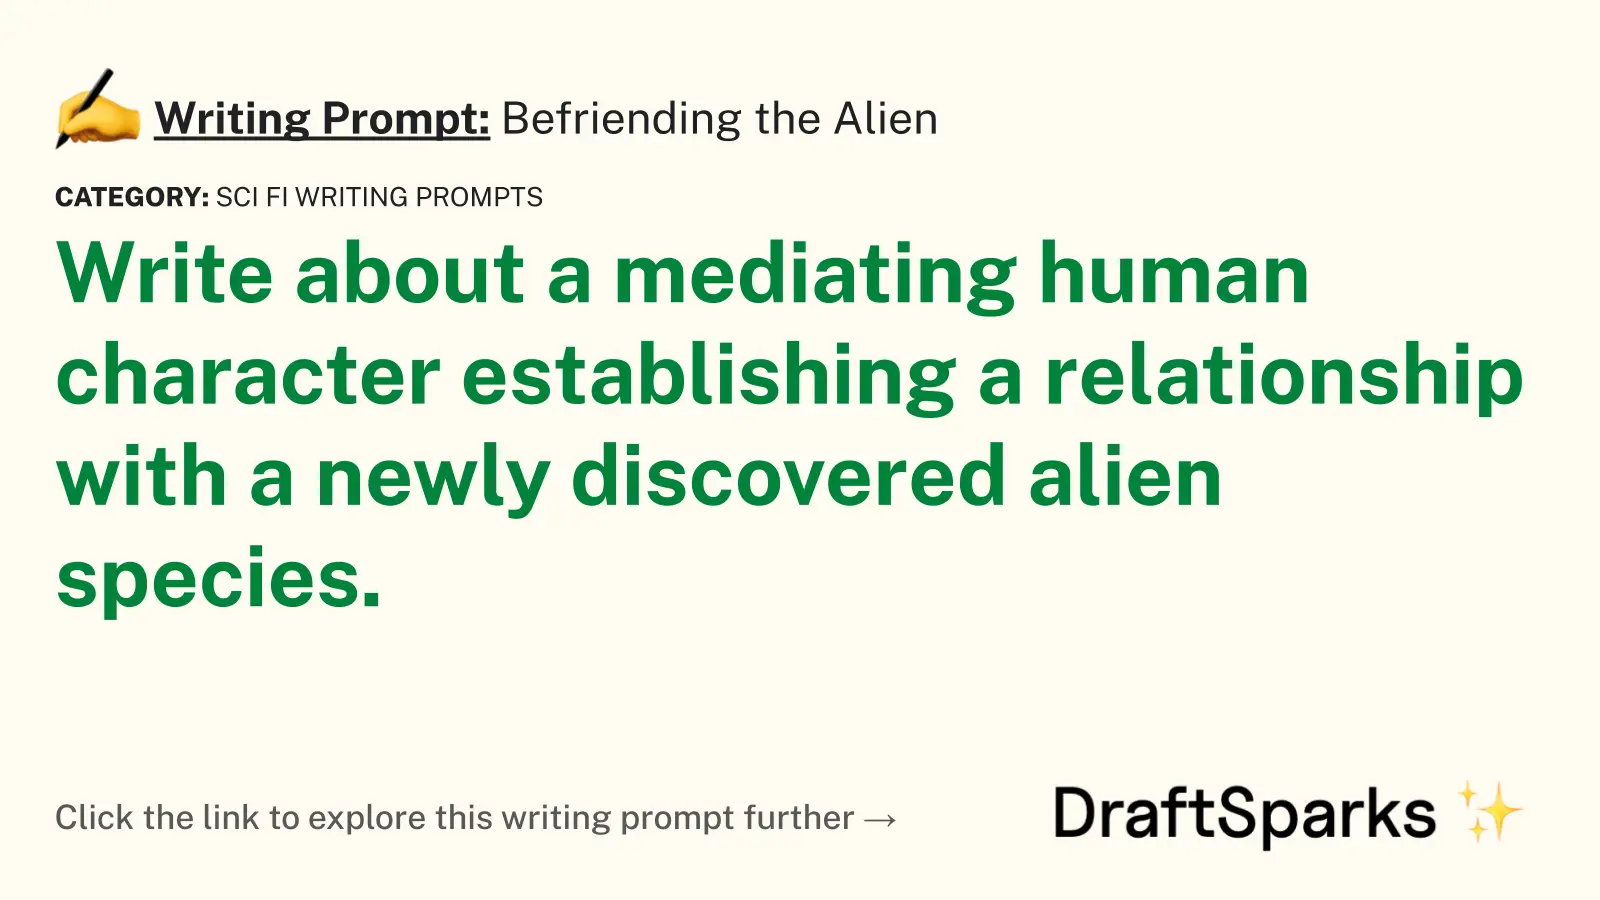 Befriending the Alien